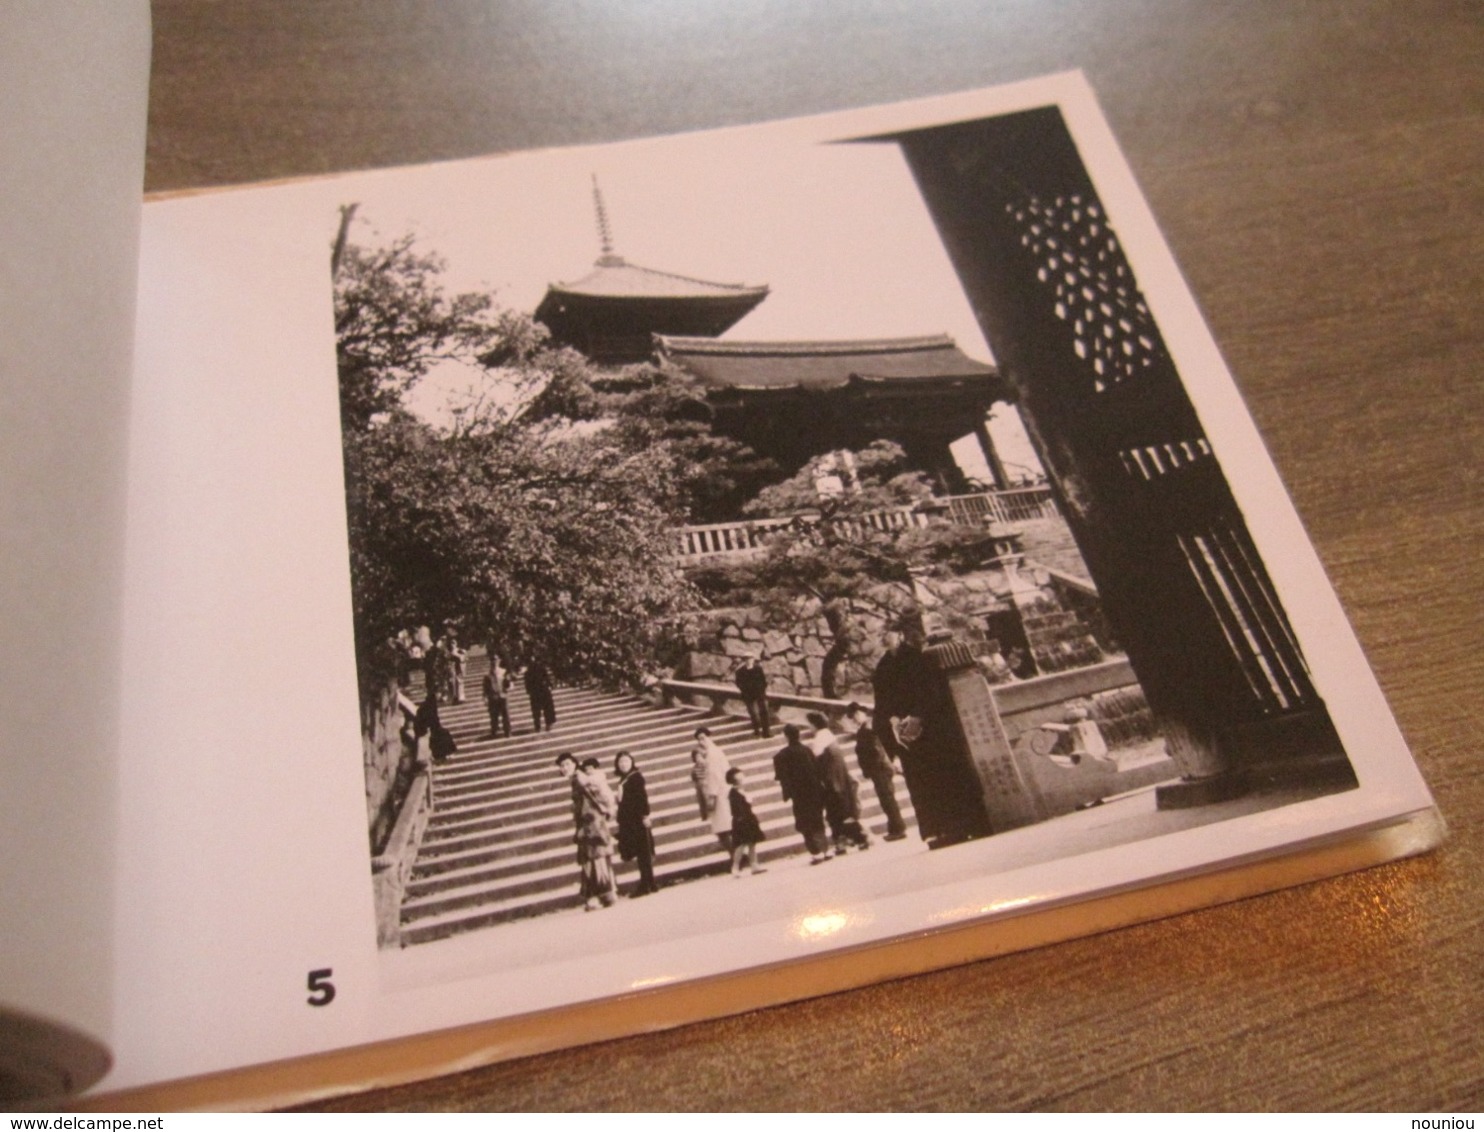 Rare antique booklet photographs photo KYOTO Japan Torii at Heian Shinto Priests Geisha Maiko Higashi Kiyomizu Kinkakuji